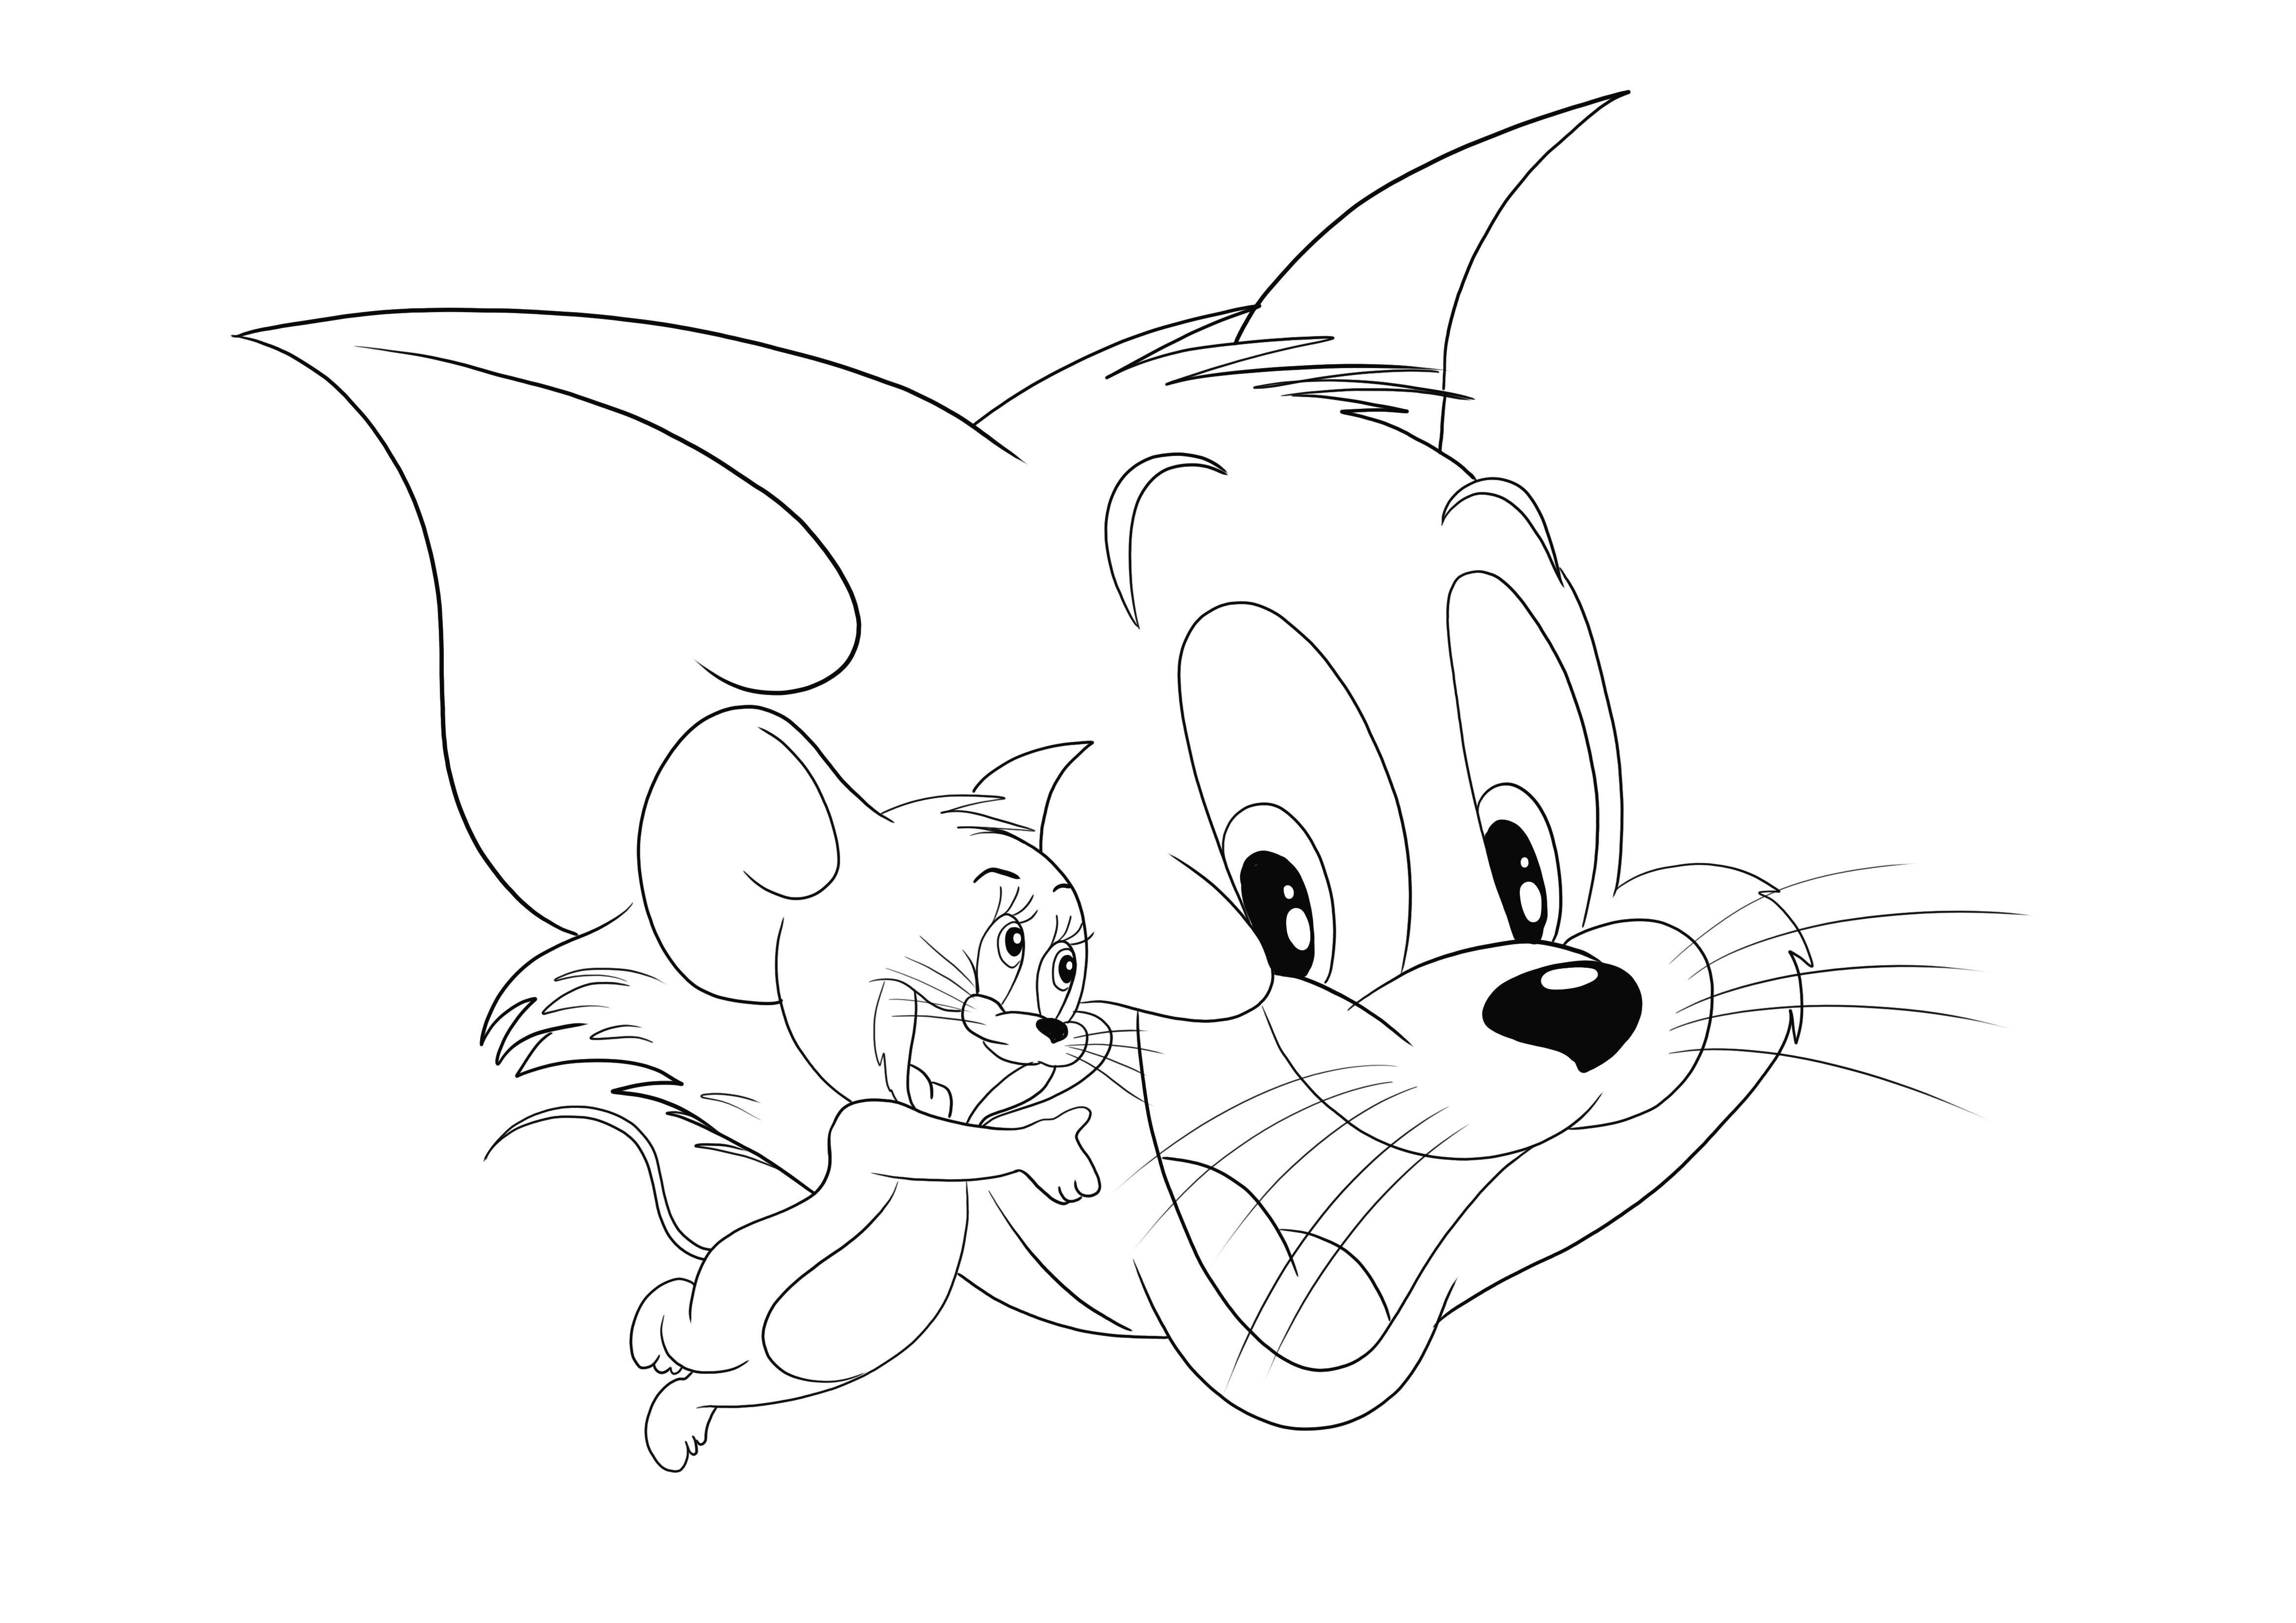 Tom y Jerry y sus caritas felices esperan ser descargados y coloreados por sus pequeños fans